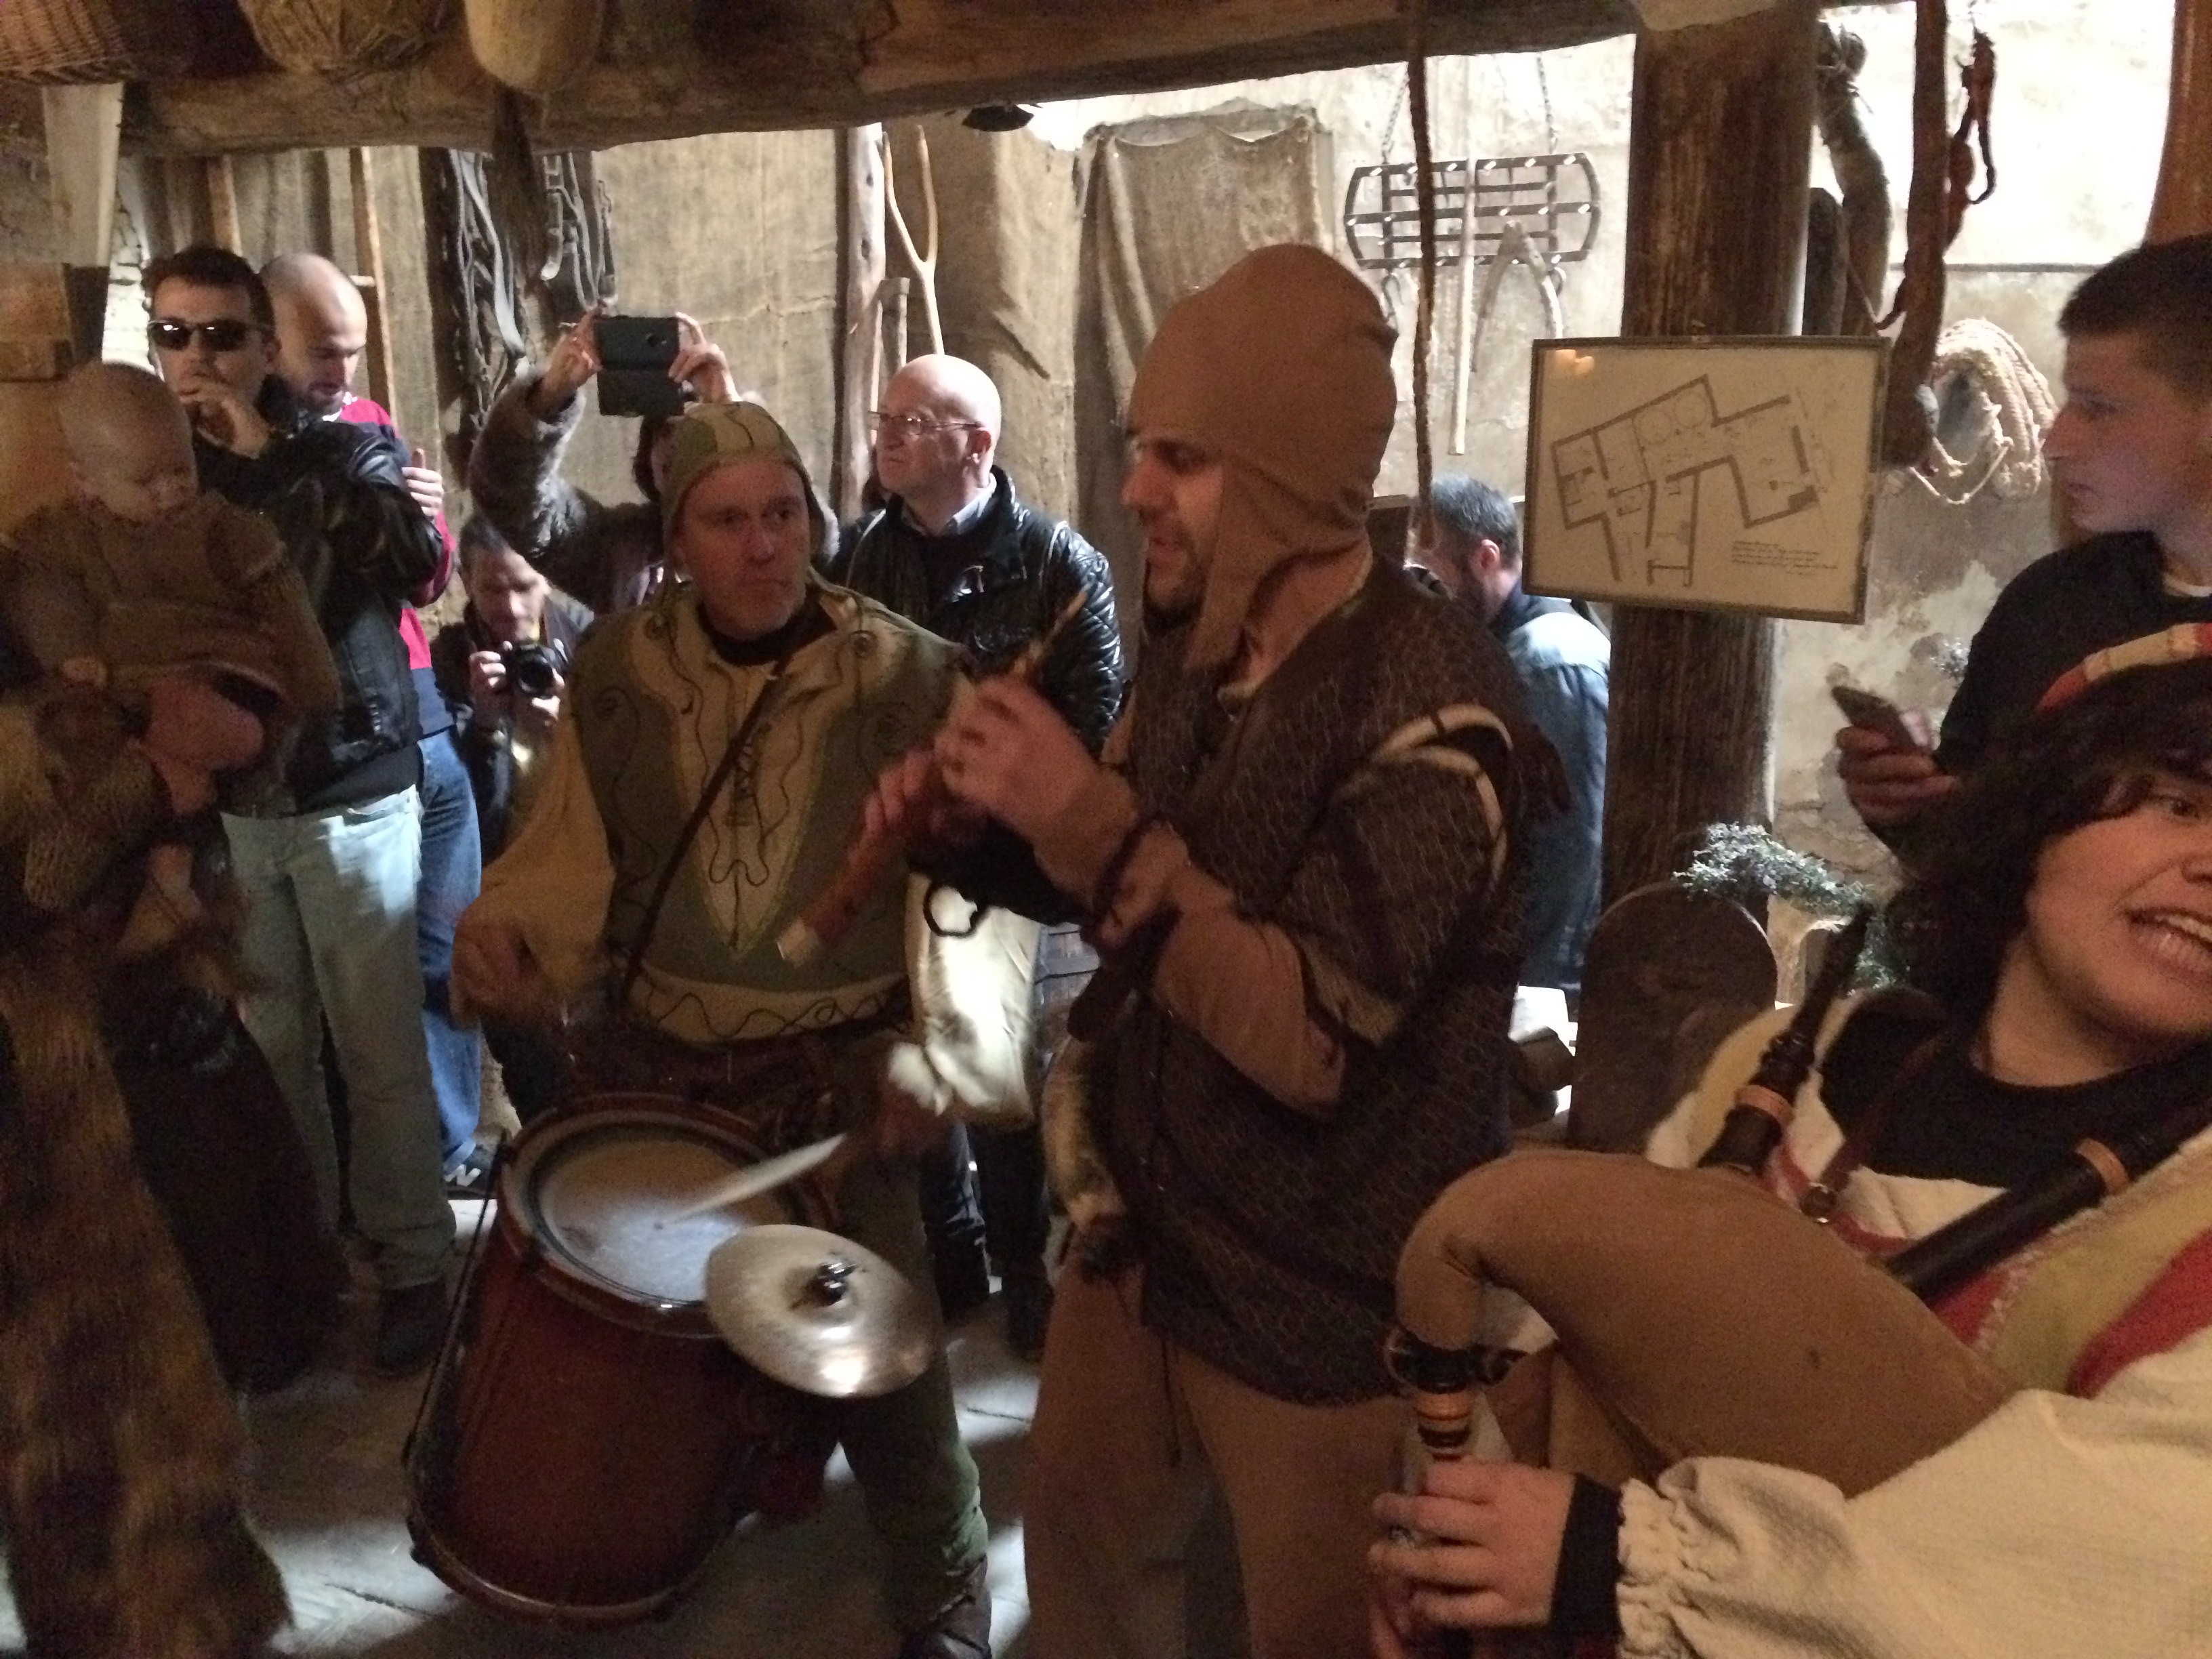 Mittelalter-Fest von Villena (Spanien), ein magisches Erlebnis für die gesamte Familie, Mario Schumacher Blog